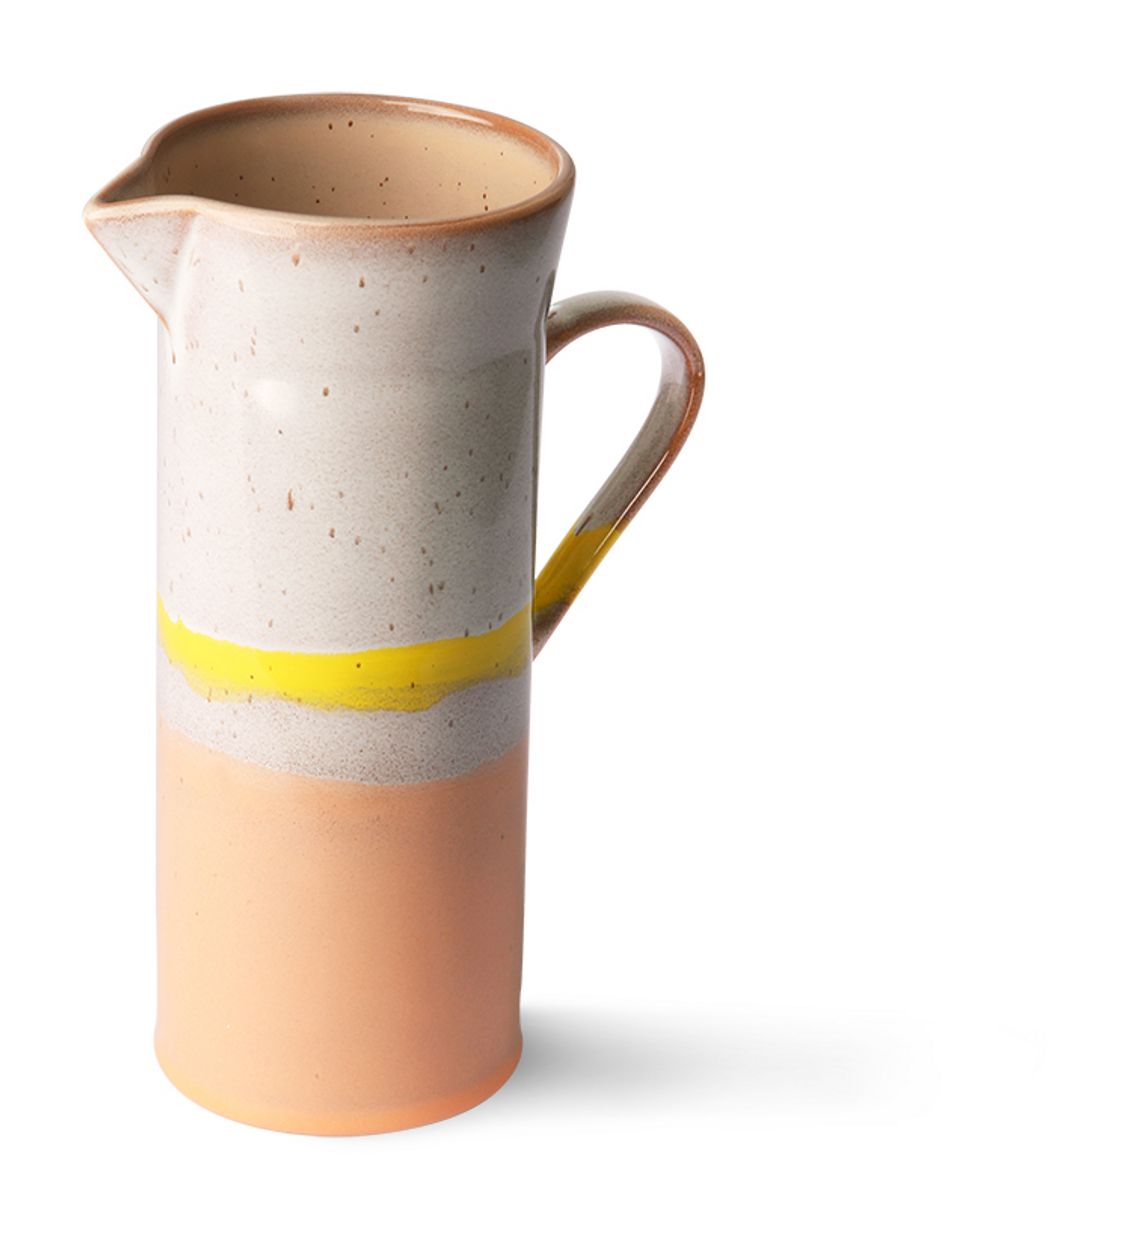 70s ceramics: jug, sunrise